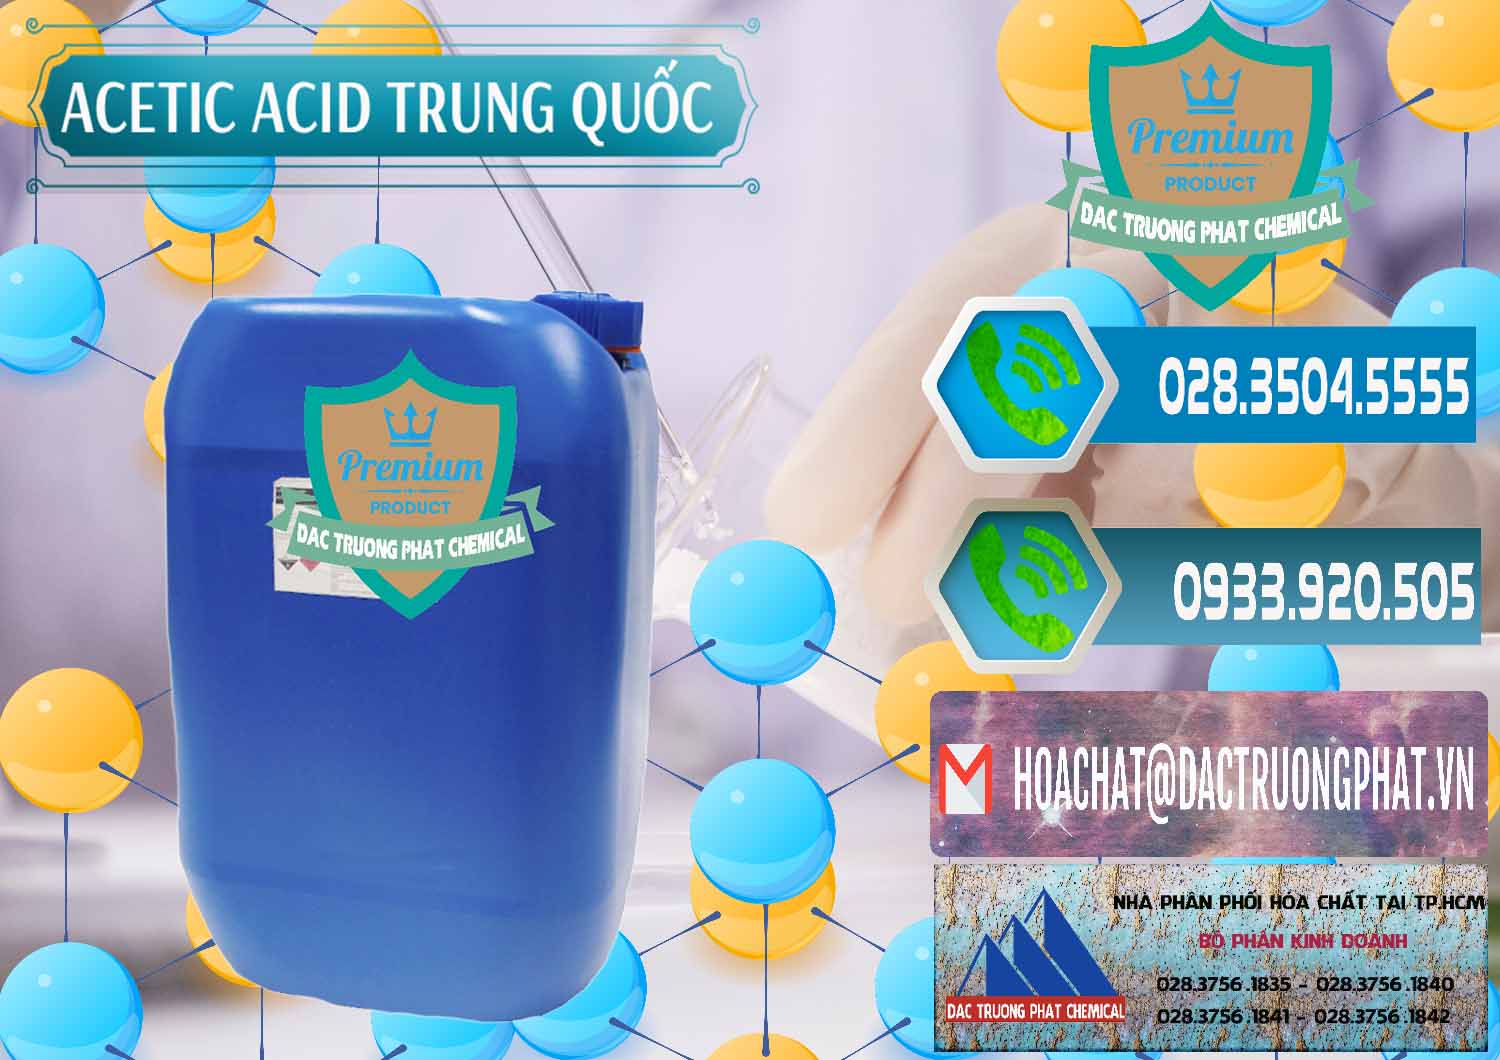 Công ty chuyên bán & phân phối Acetic Acid – Axit Acetic Trung Quốc China - 0358 - Cty cung cấp và phân phối hóa chất tại TP.HCM - congtyhoachat.net